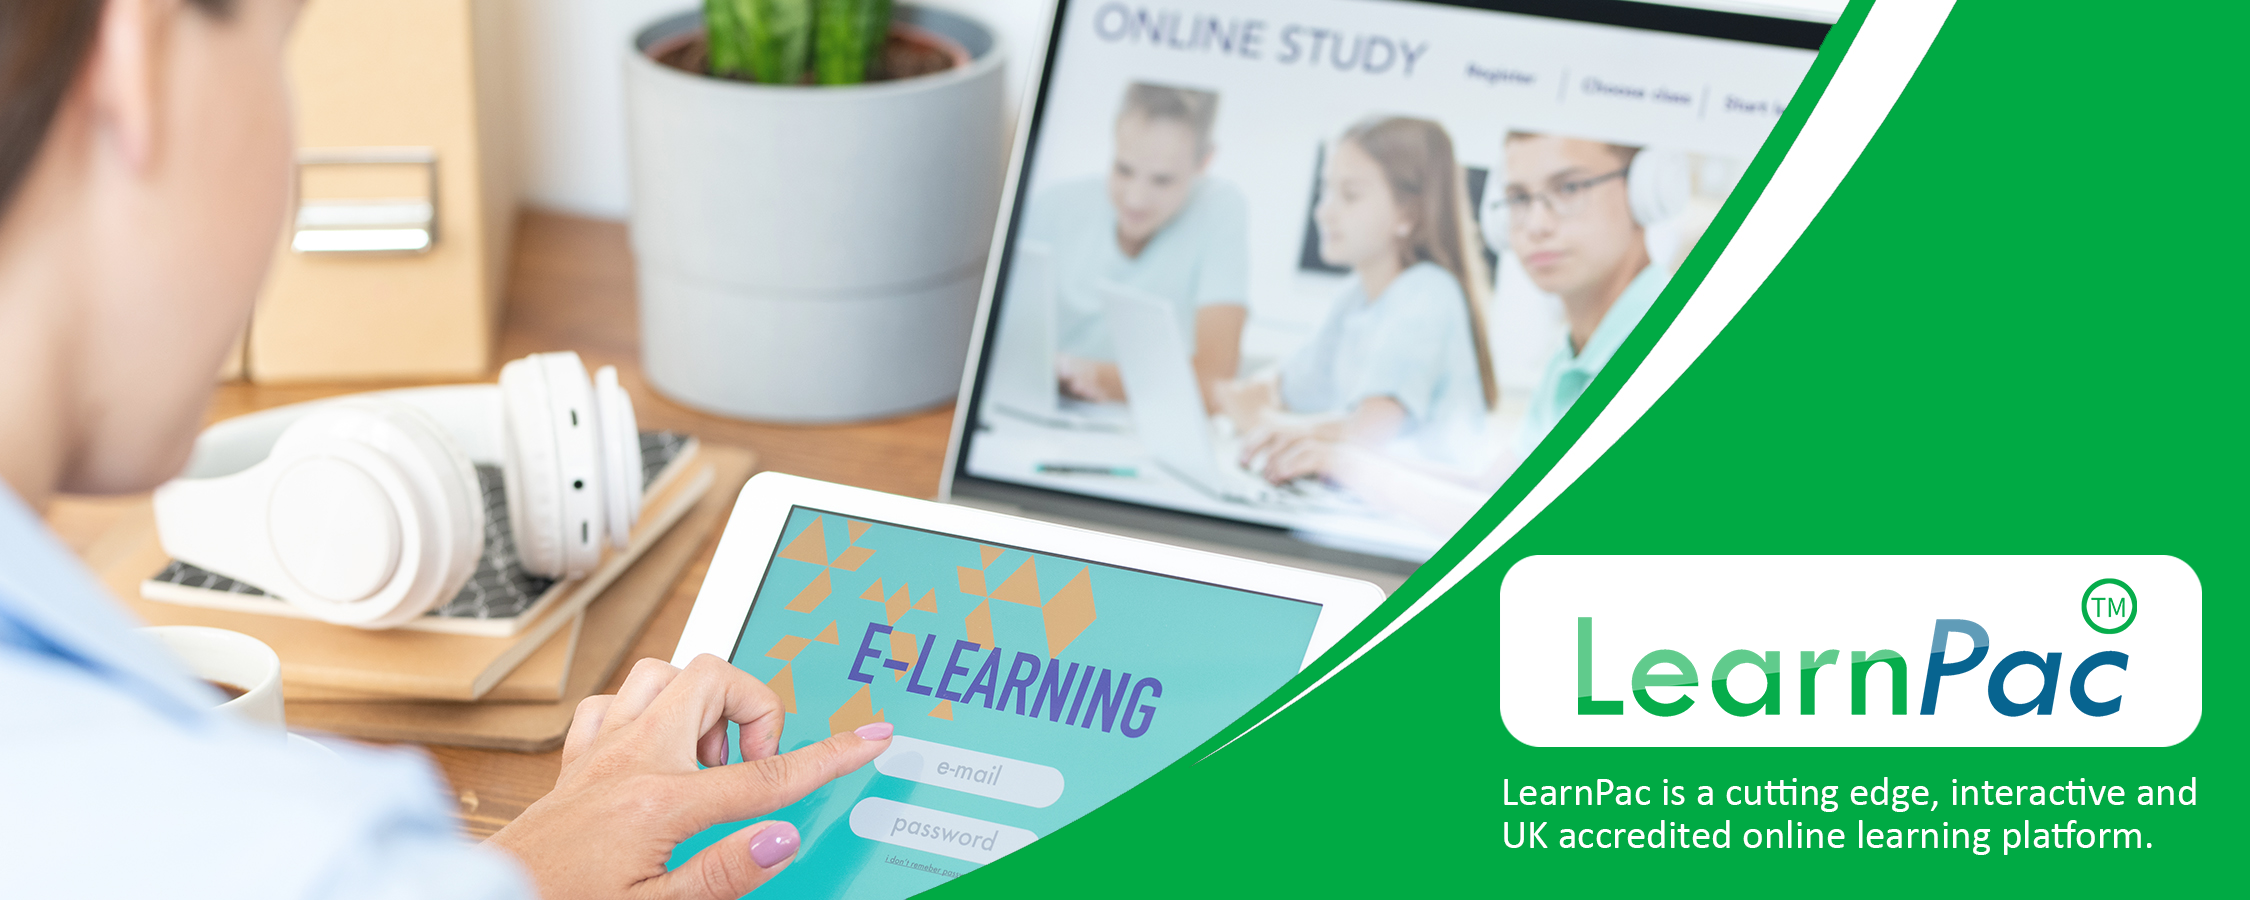 Negotiation Skills Training - Online Learning Courses - E-Learning Courses - LearnPac Systems UK -